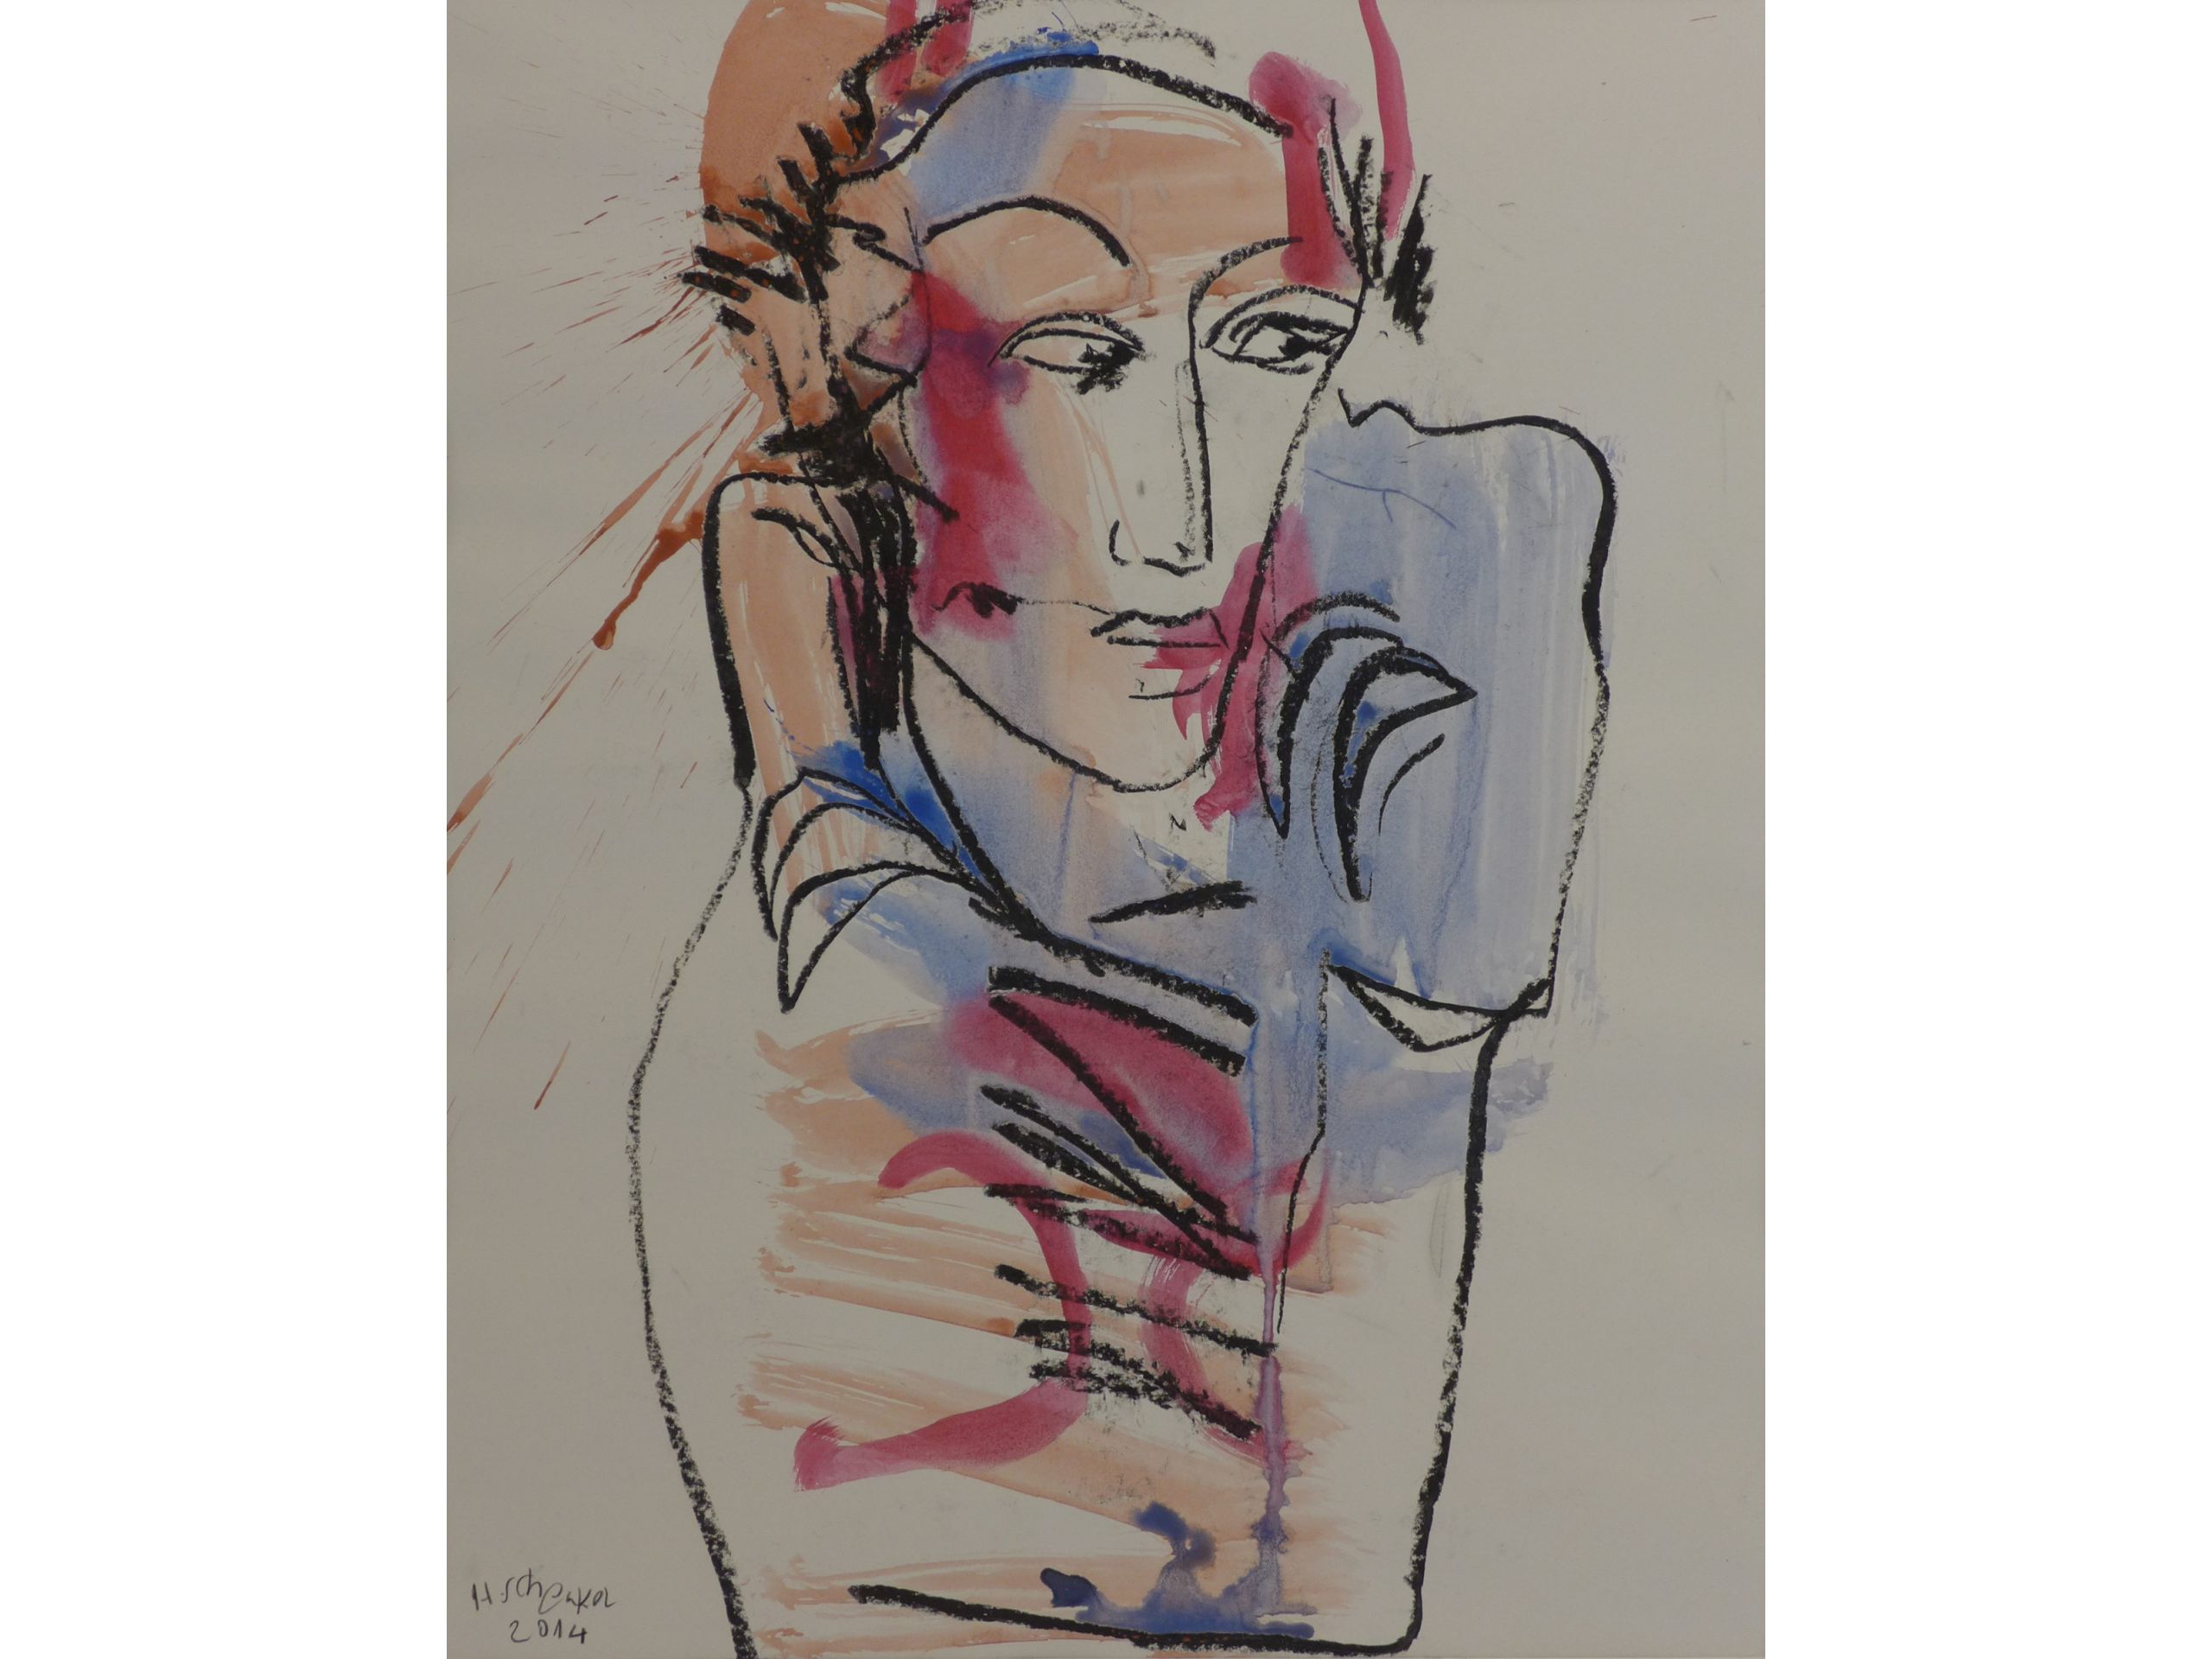 Hermann Schenkel, 'Posing', 2014, Ölkreide, Aquarell auf Papier, 50 x 40 cm, 300 € 